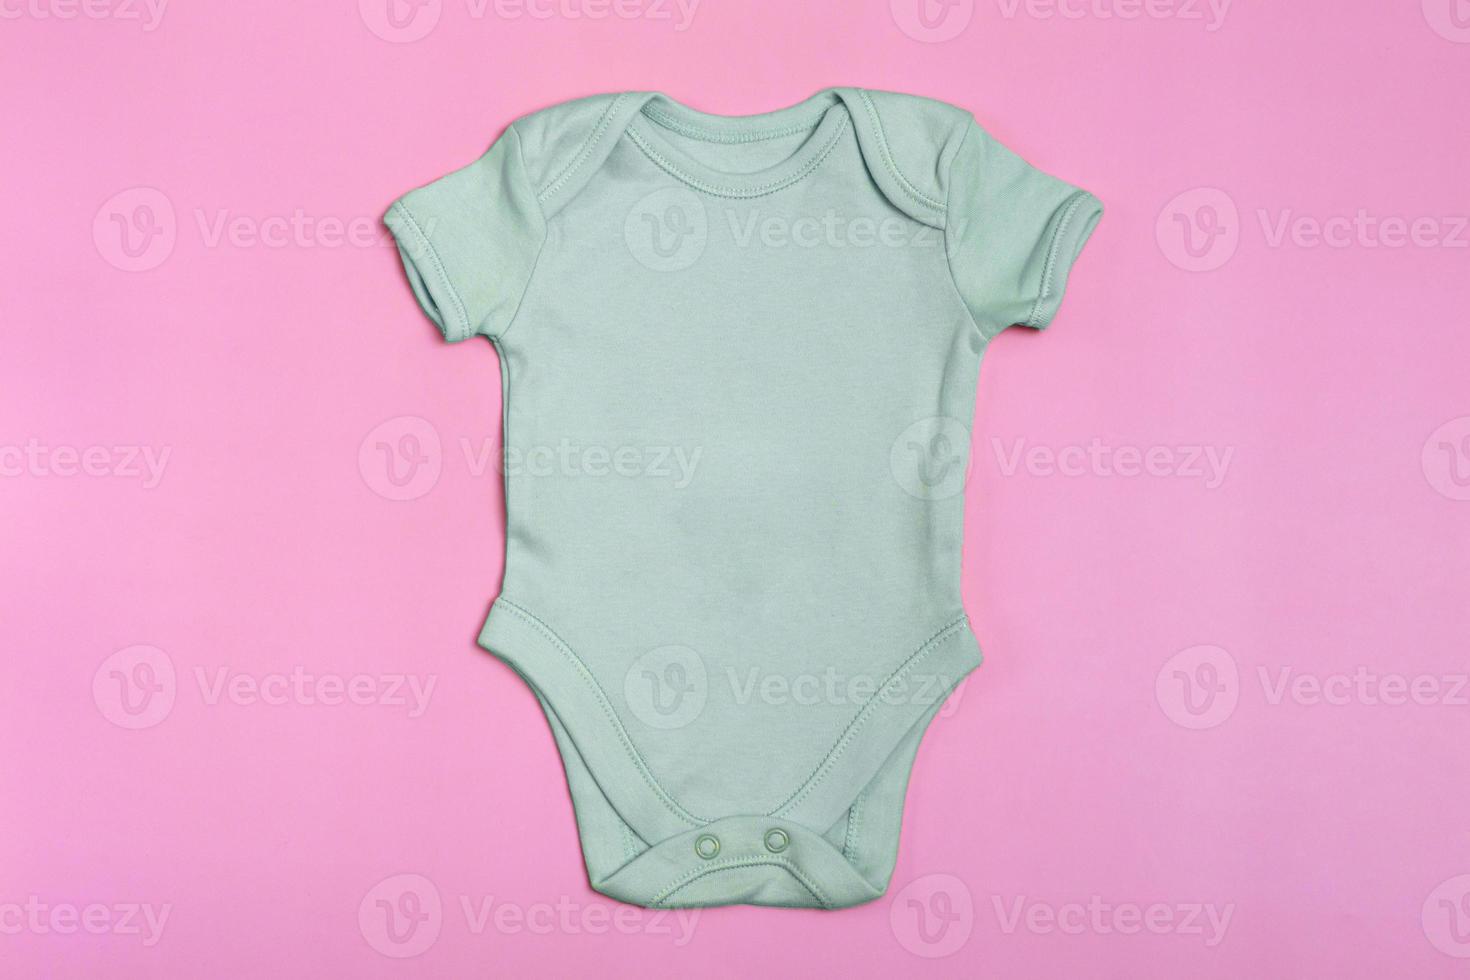 berken leeg baby Romper sjabloon, mock up close-up op roze achtergrond. baby bodysuit, jumpsuit voor pasgeborenen. uitzicht van boven foto